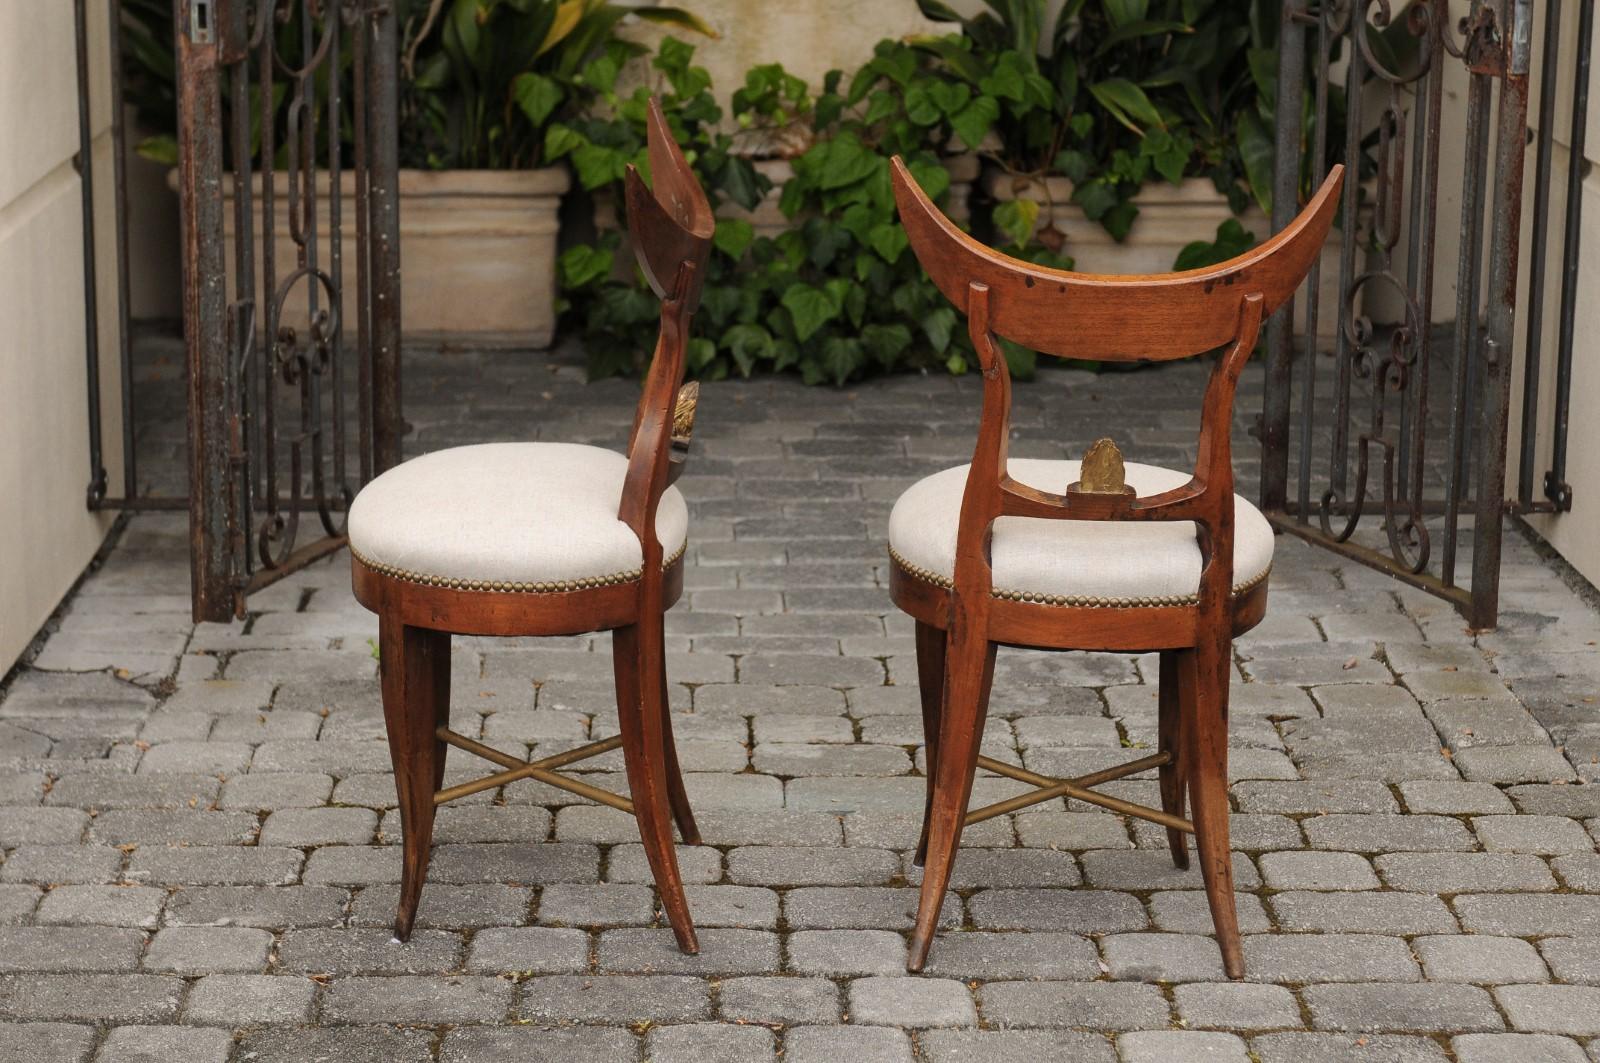 Paire de chaises d'appoint italiennes du milieu du XIXe siècle, à dossier en forme de croissant, à assise tapissée de lin neuf et à pieds sabres. Née en Italie au cours du troisième quart du XIXe siècle, cette paire de chaises italiennes